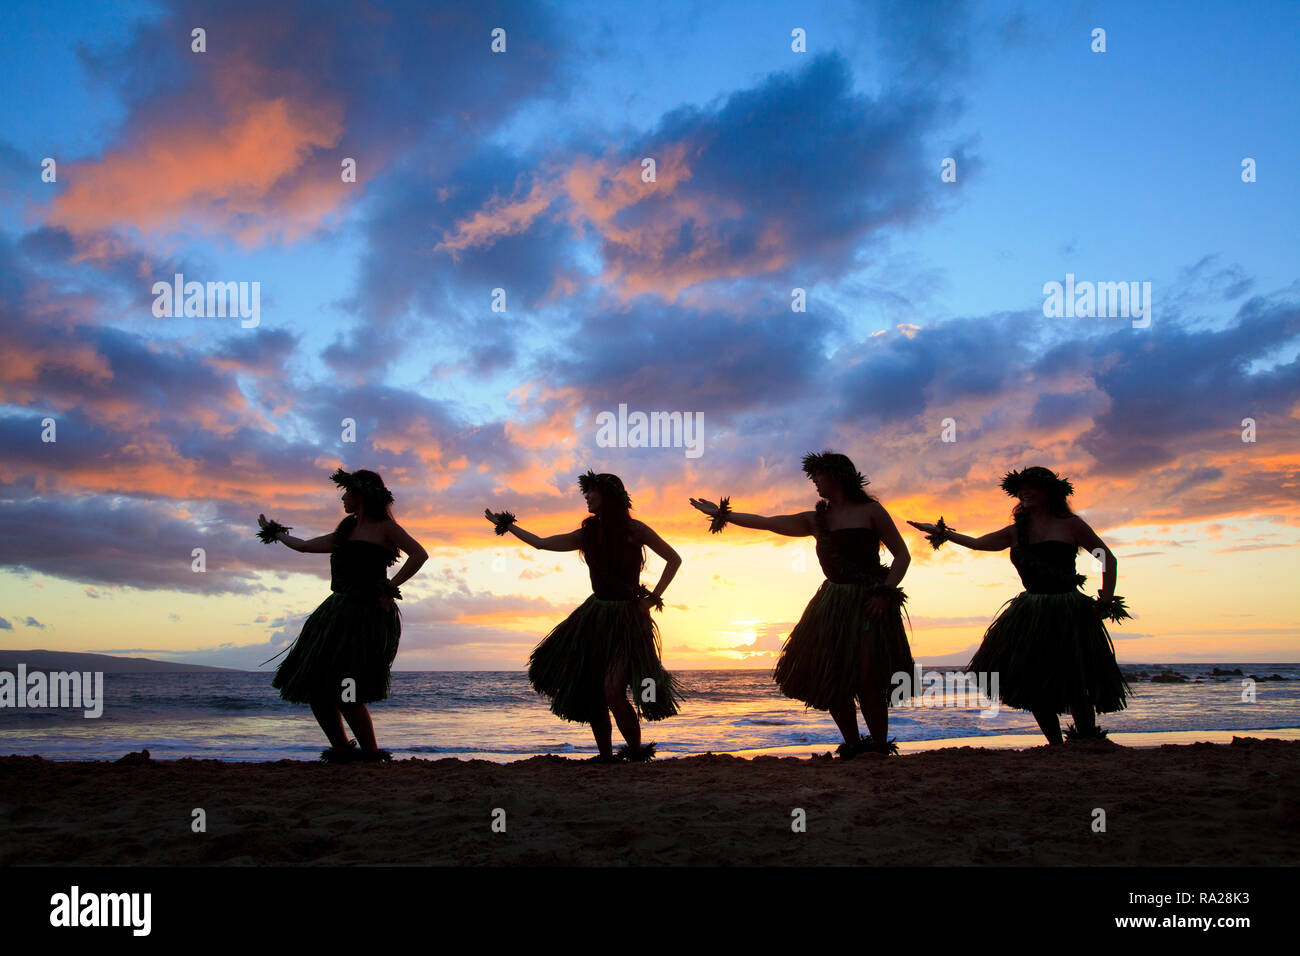 Four hula dancers with a spectacular sunset at Palauea Beach, Maui, Hawaii. Stock Photo